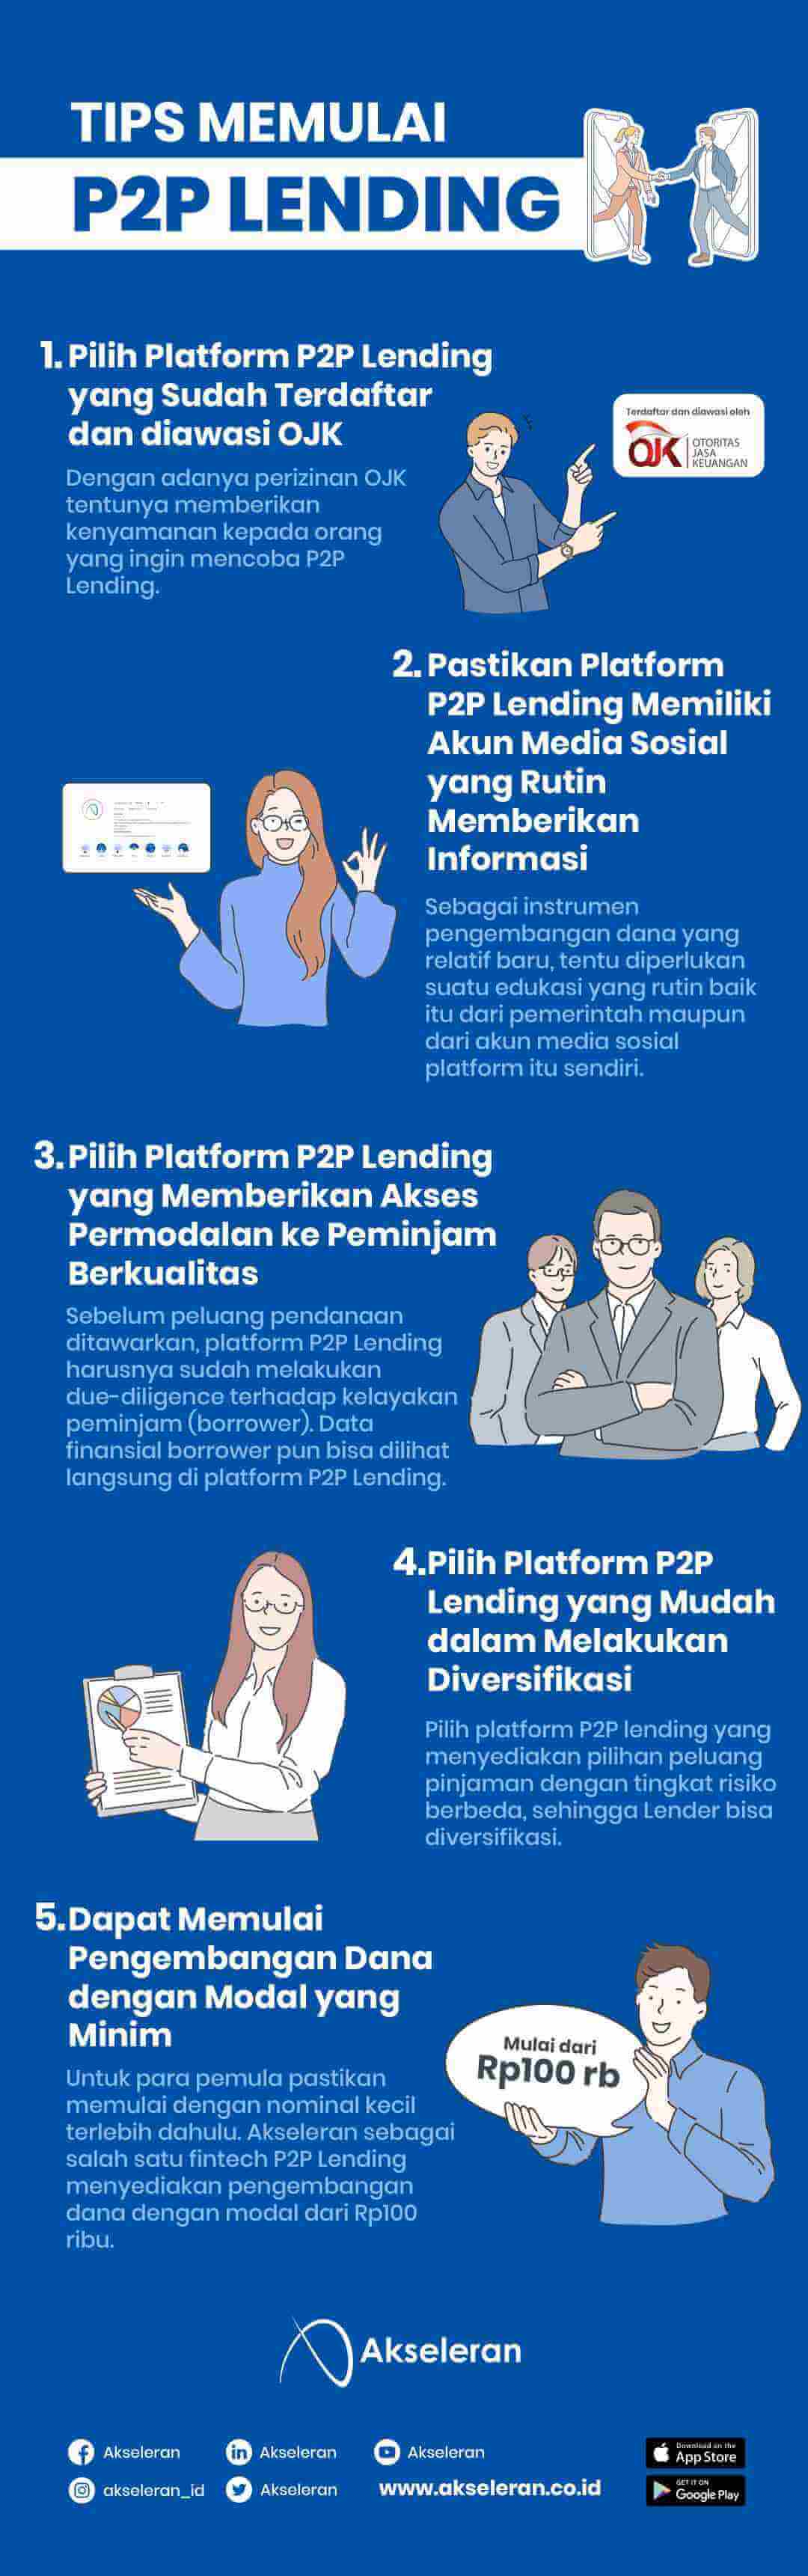 Tips Memulai P2P Lending